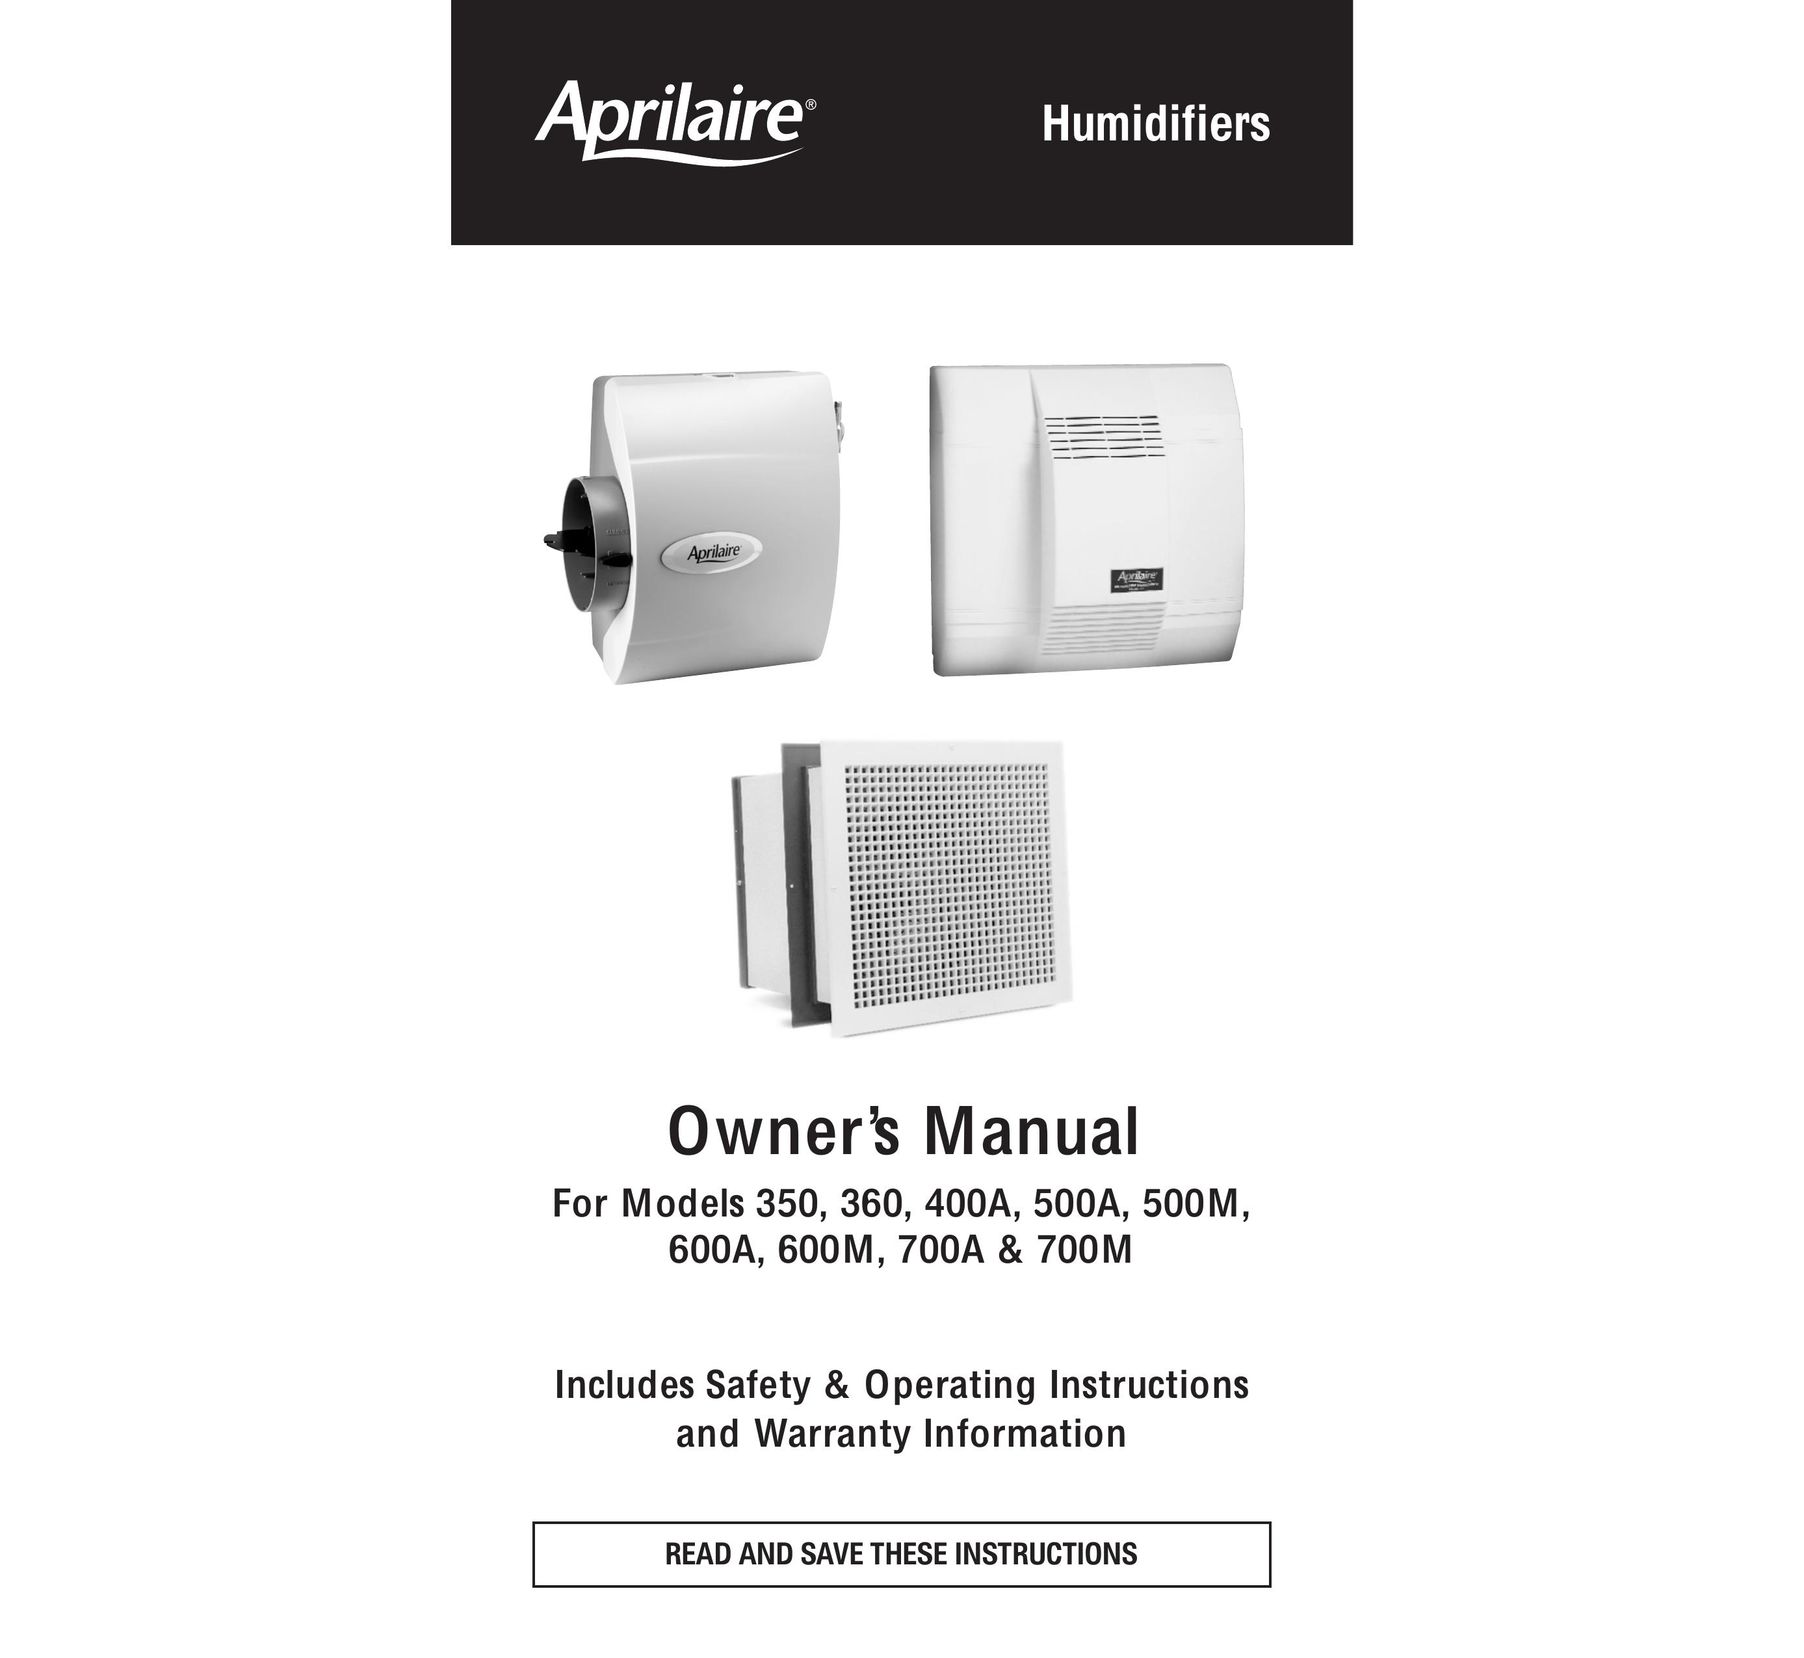 Aprilaire 700A Dehumidifier User Manual